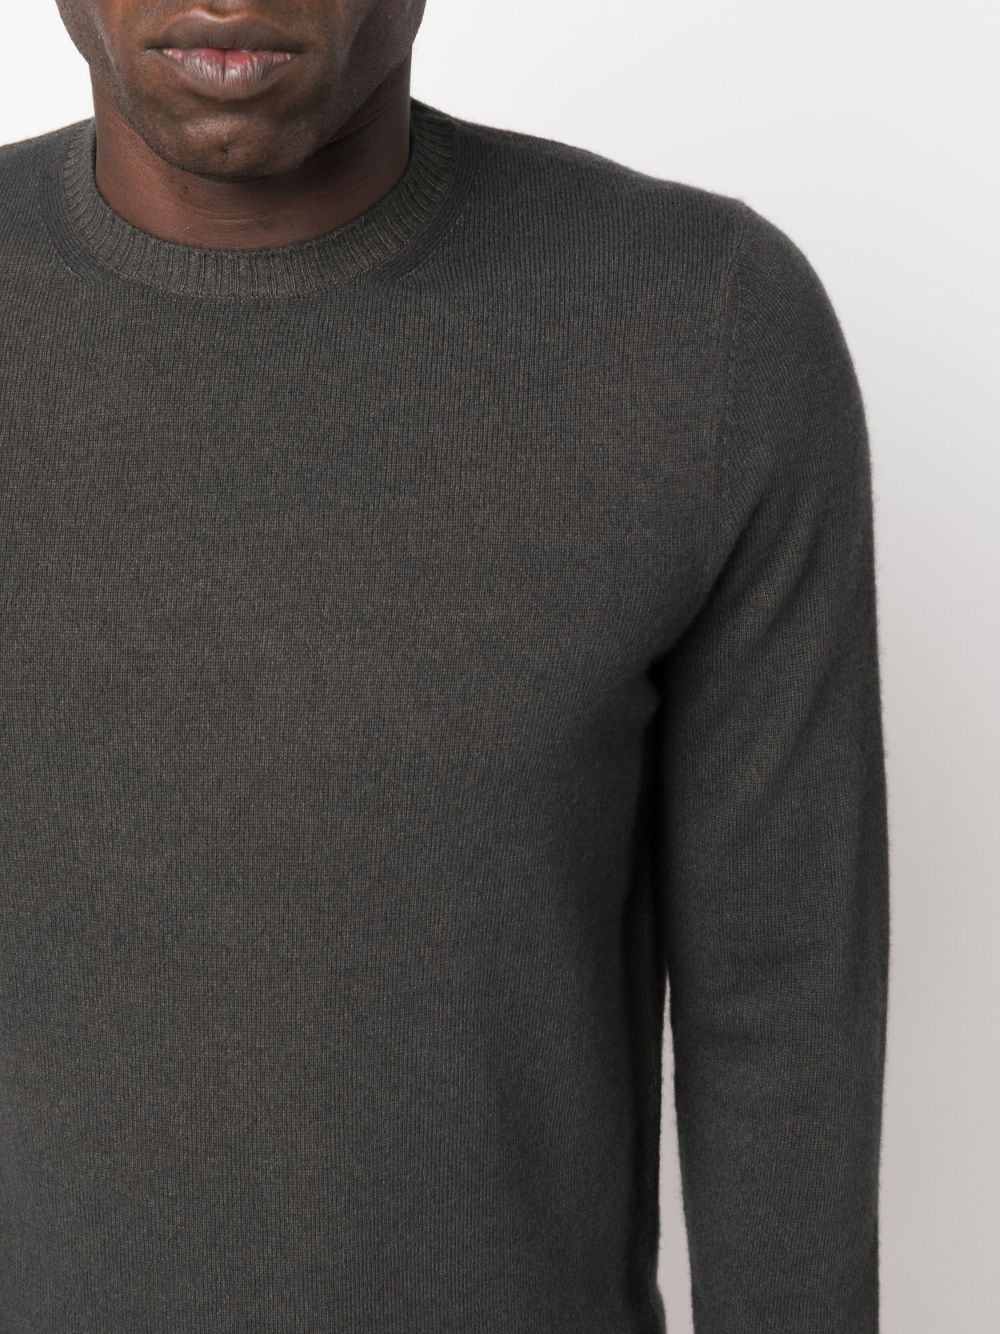 maglione grigio scuro in lana